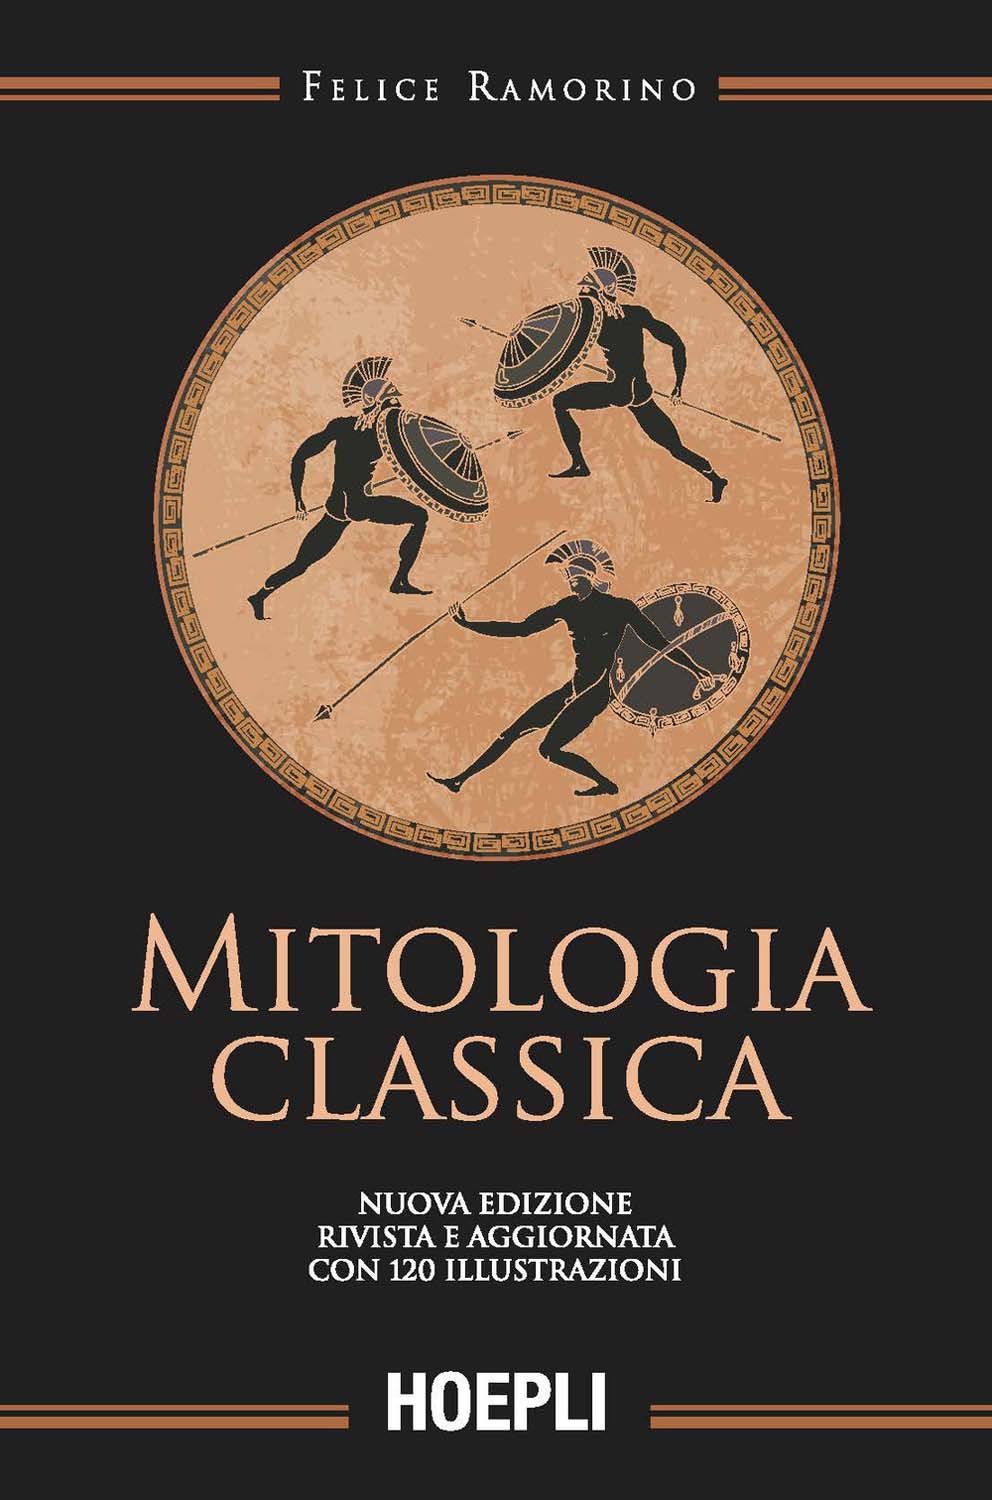 Libri Felice Ramorino - Mitologia Classica NUOVO SIGILLATO, EDIZIONE DEL 16/03/2018 SUBITO DISPONIBILE